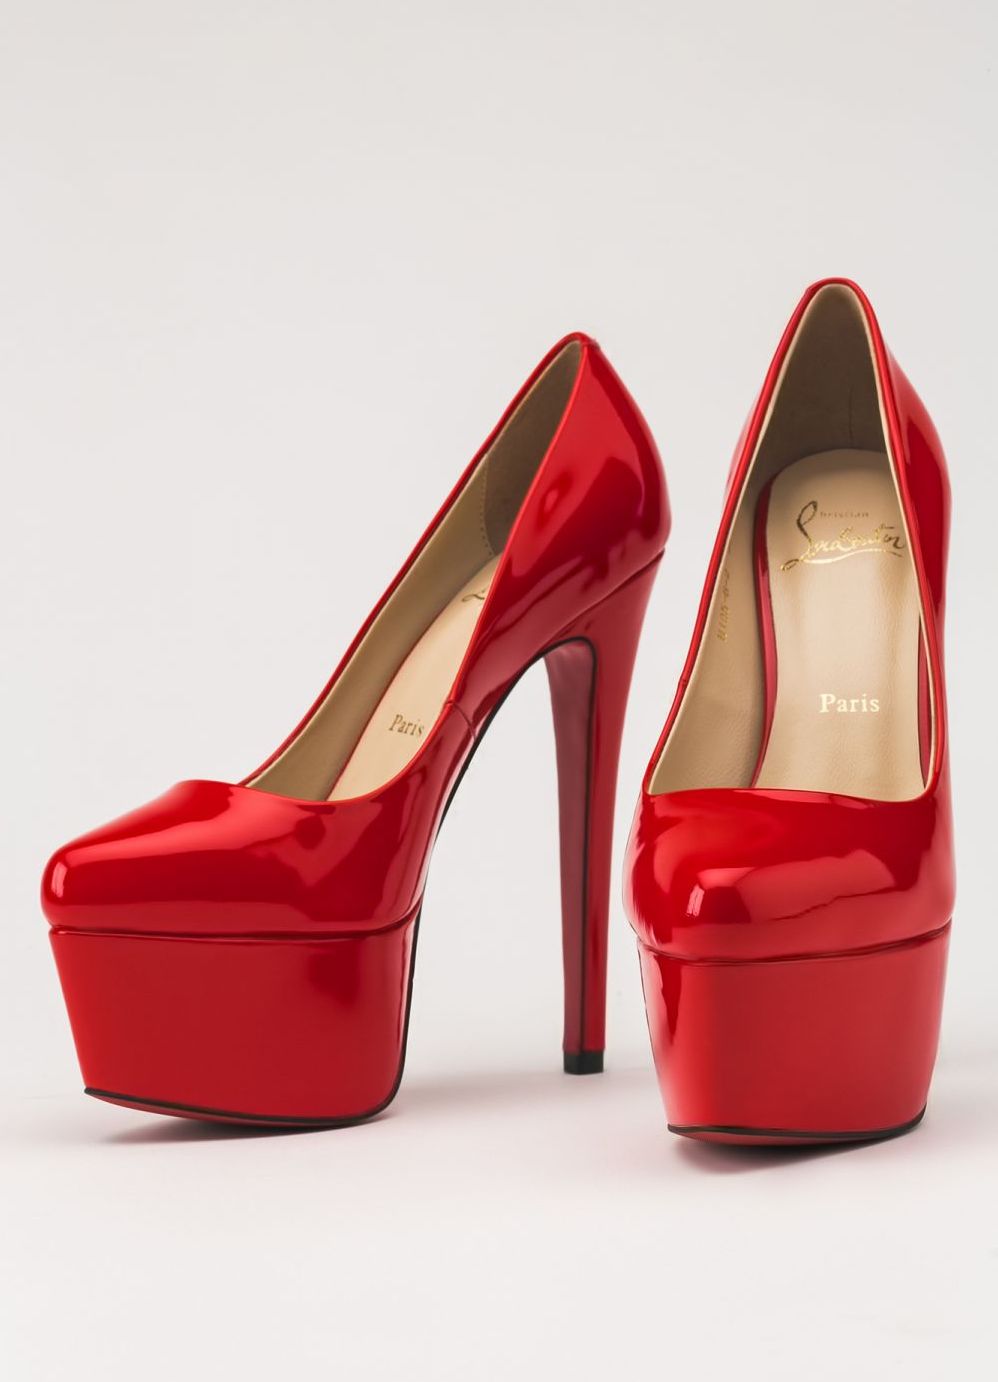 лабутены туфли: красные лаковые острый носок